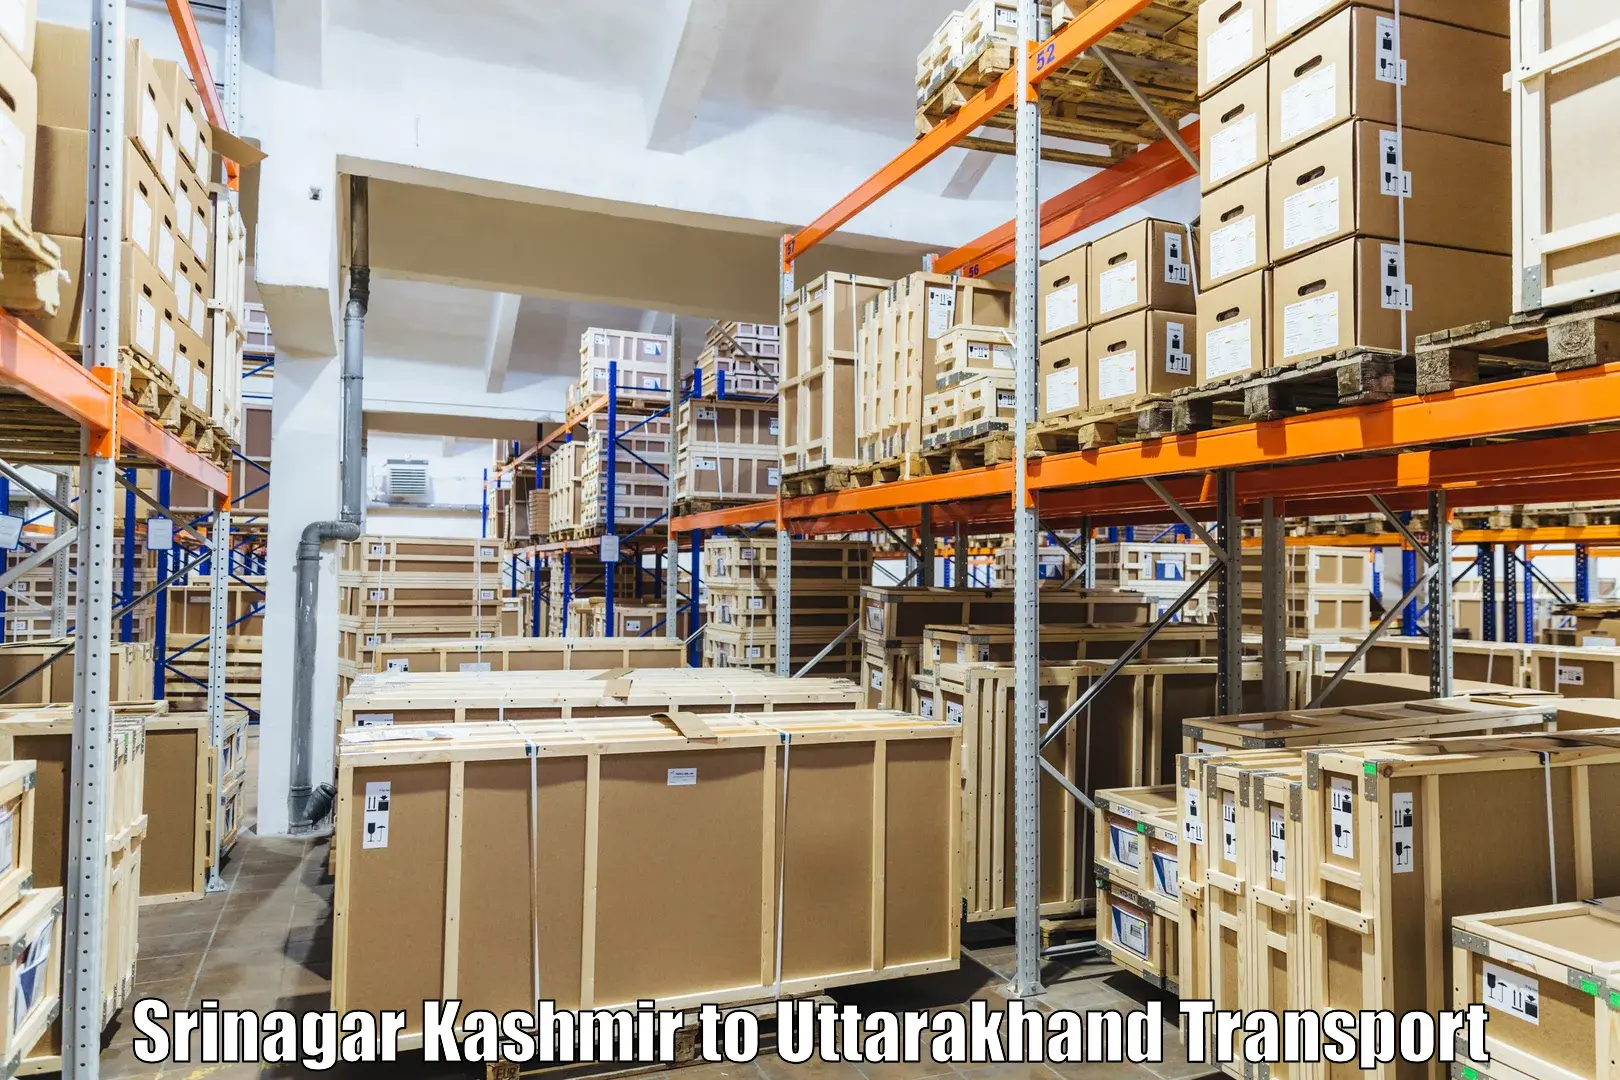 Shipping partner Srinagar Kashmir to Chamoli